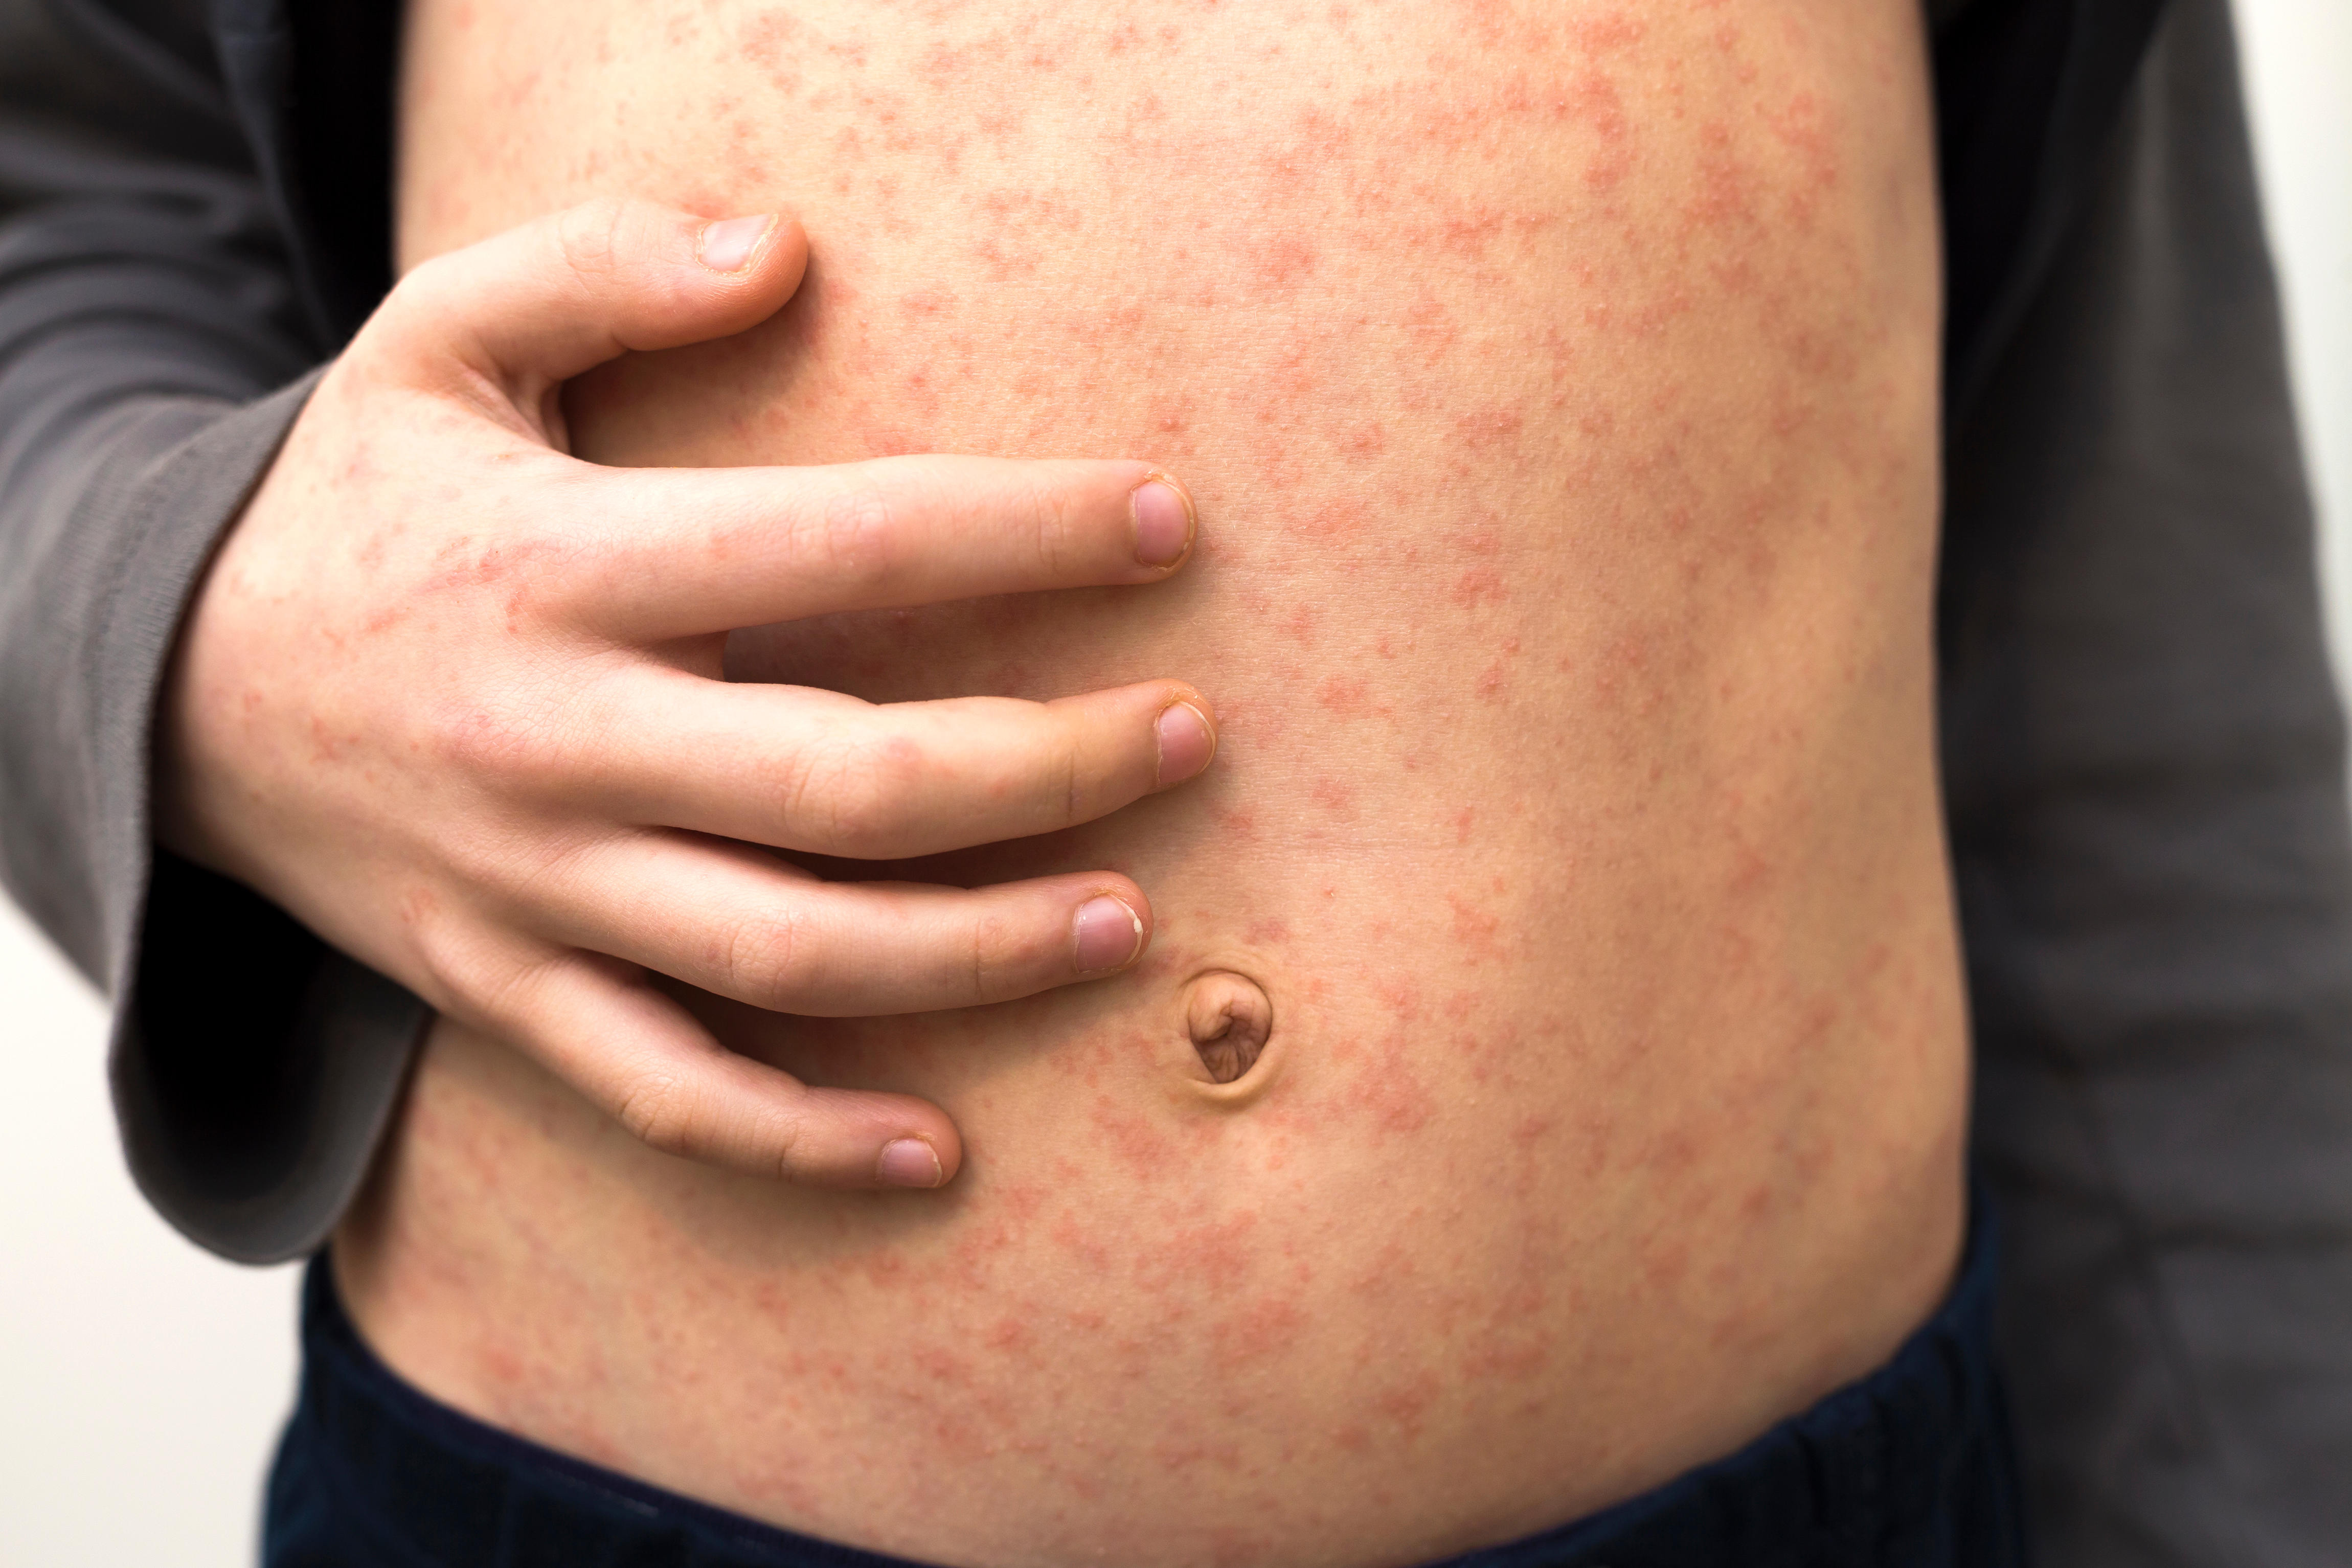 Image of measles rash